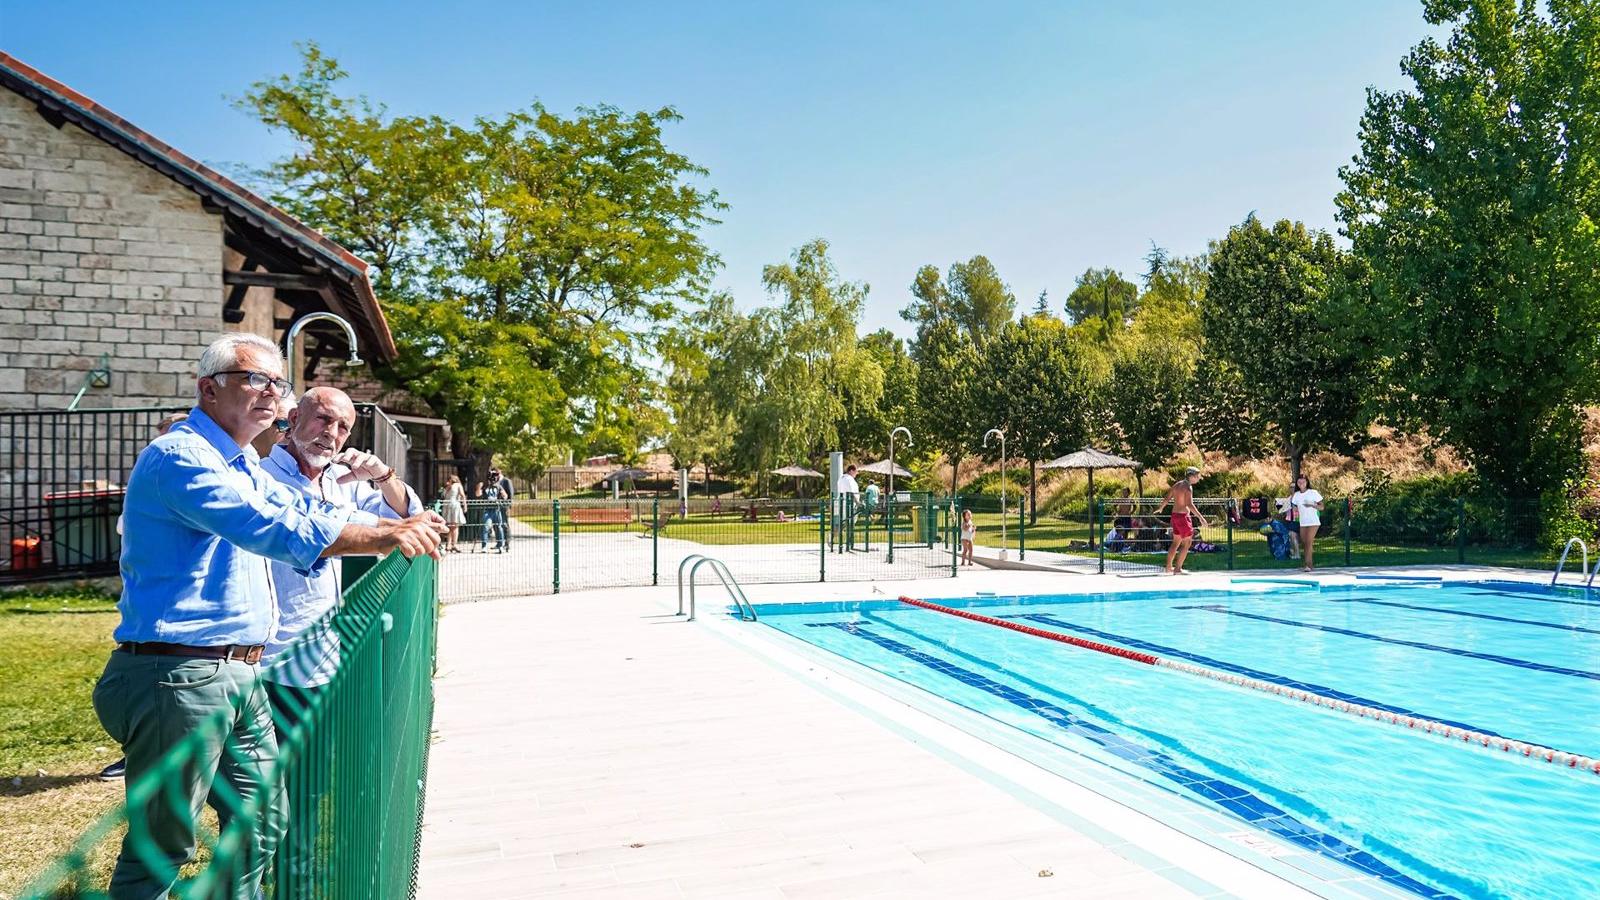 La Comunidad finaliza un nuevo espacio deportivo en Ambite tras acometer la reforma de la piscina y la zona adyacente